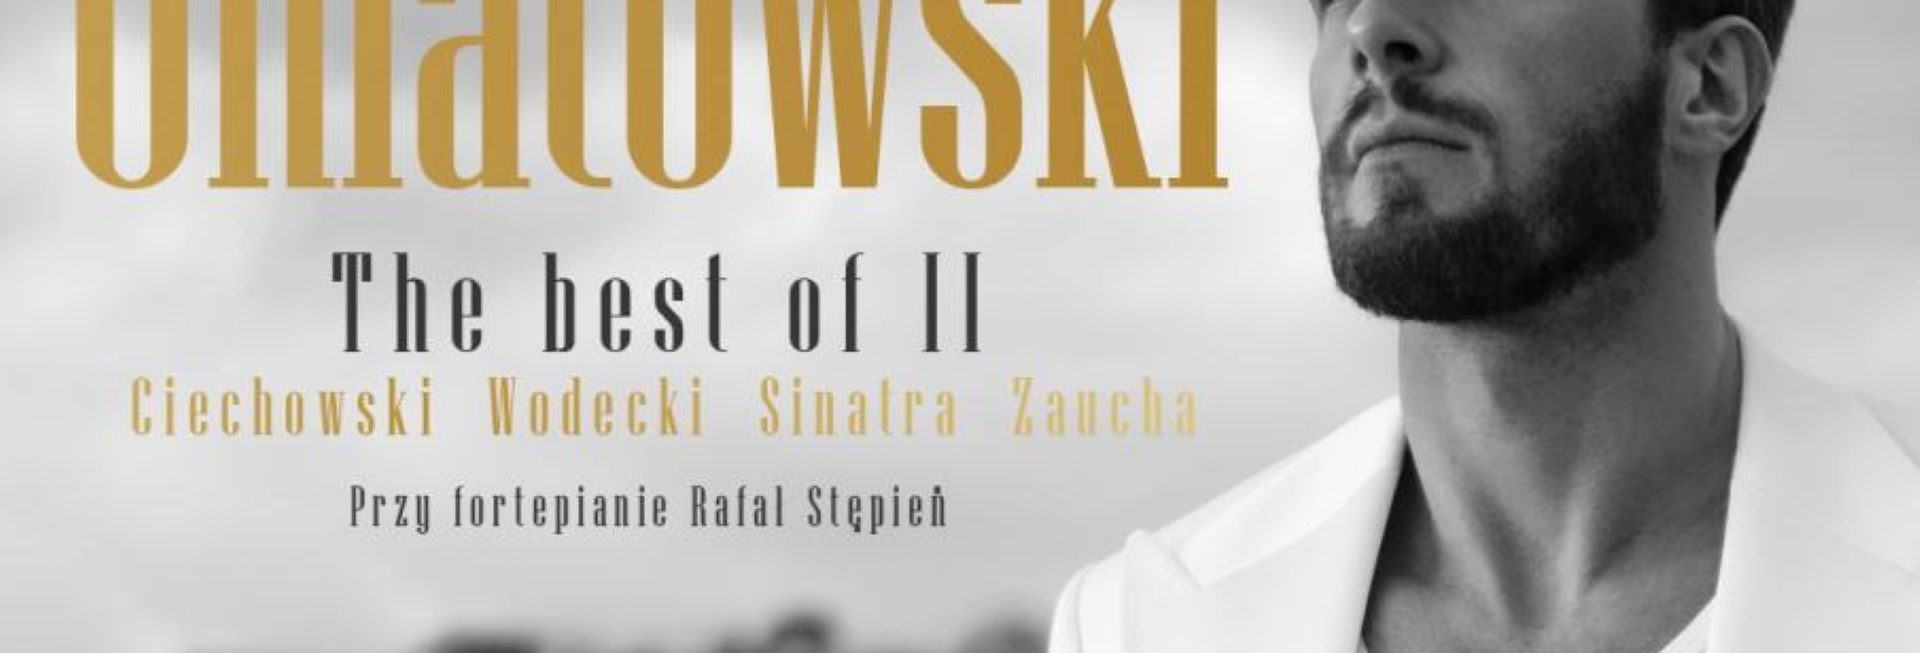 Plakat graficzny zapraszający do Elbląga na koncert Sławka Uniatowskiego – THE BEST OF II - Elbląg 2021. Na plakacie zdjęcie wykonawcy oraz napisy.   